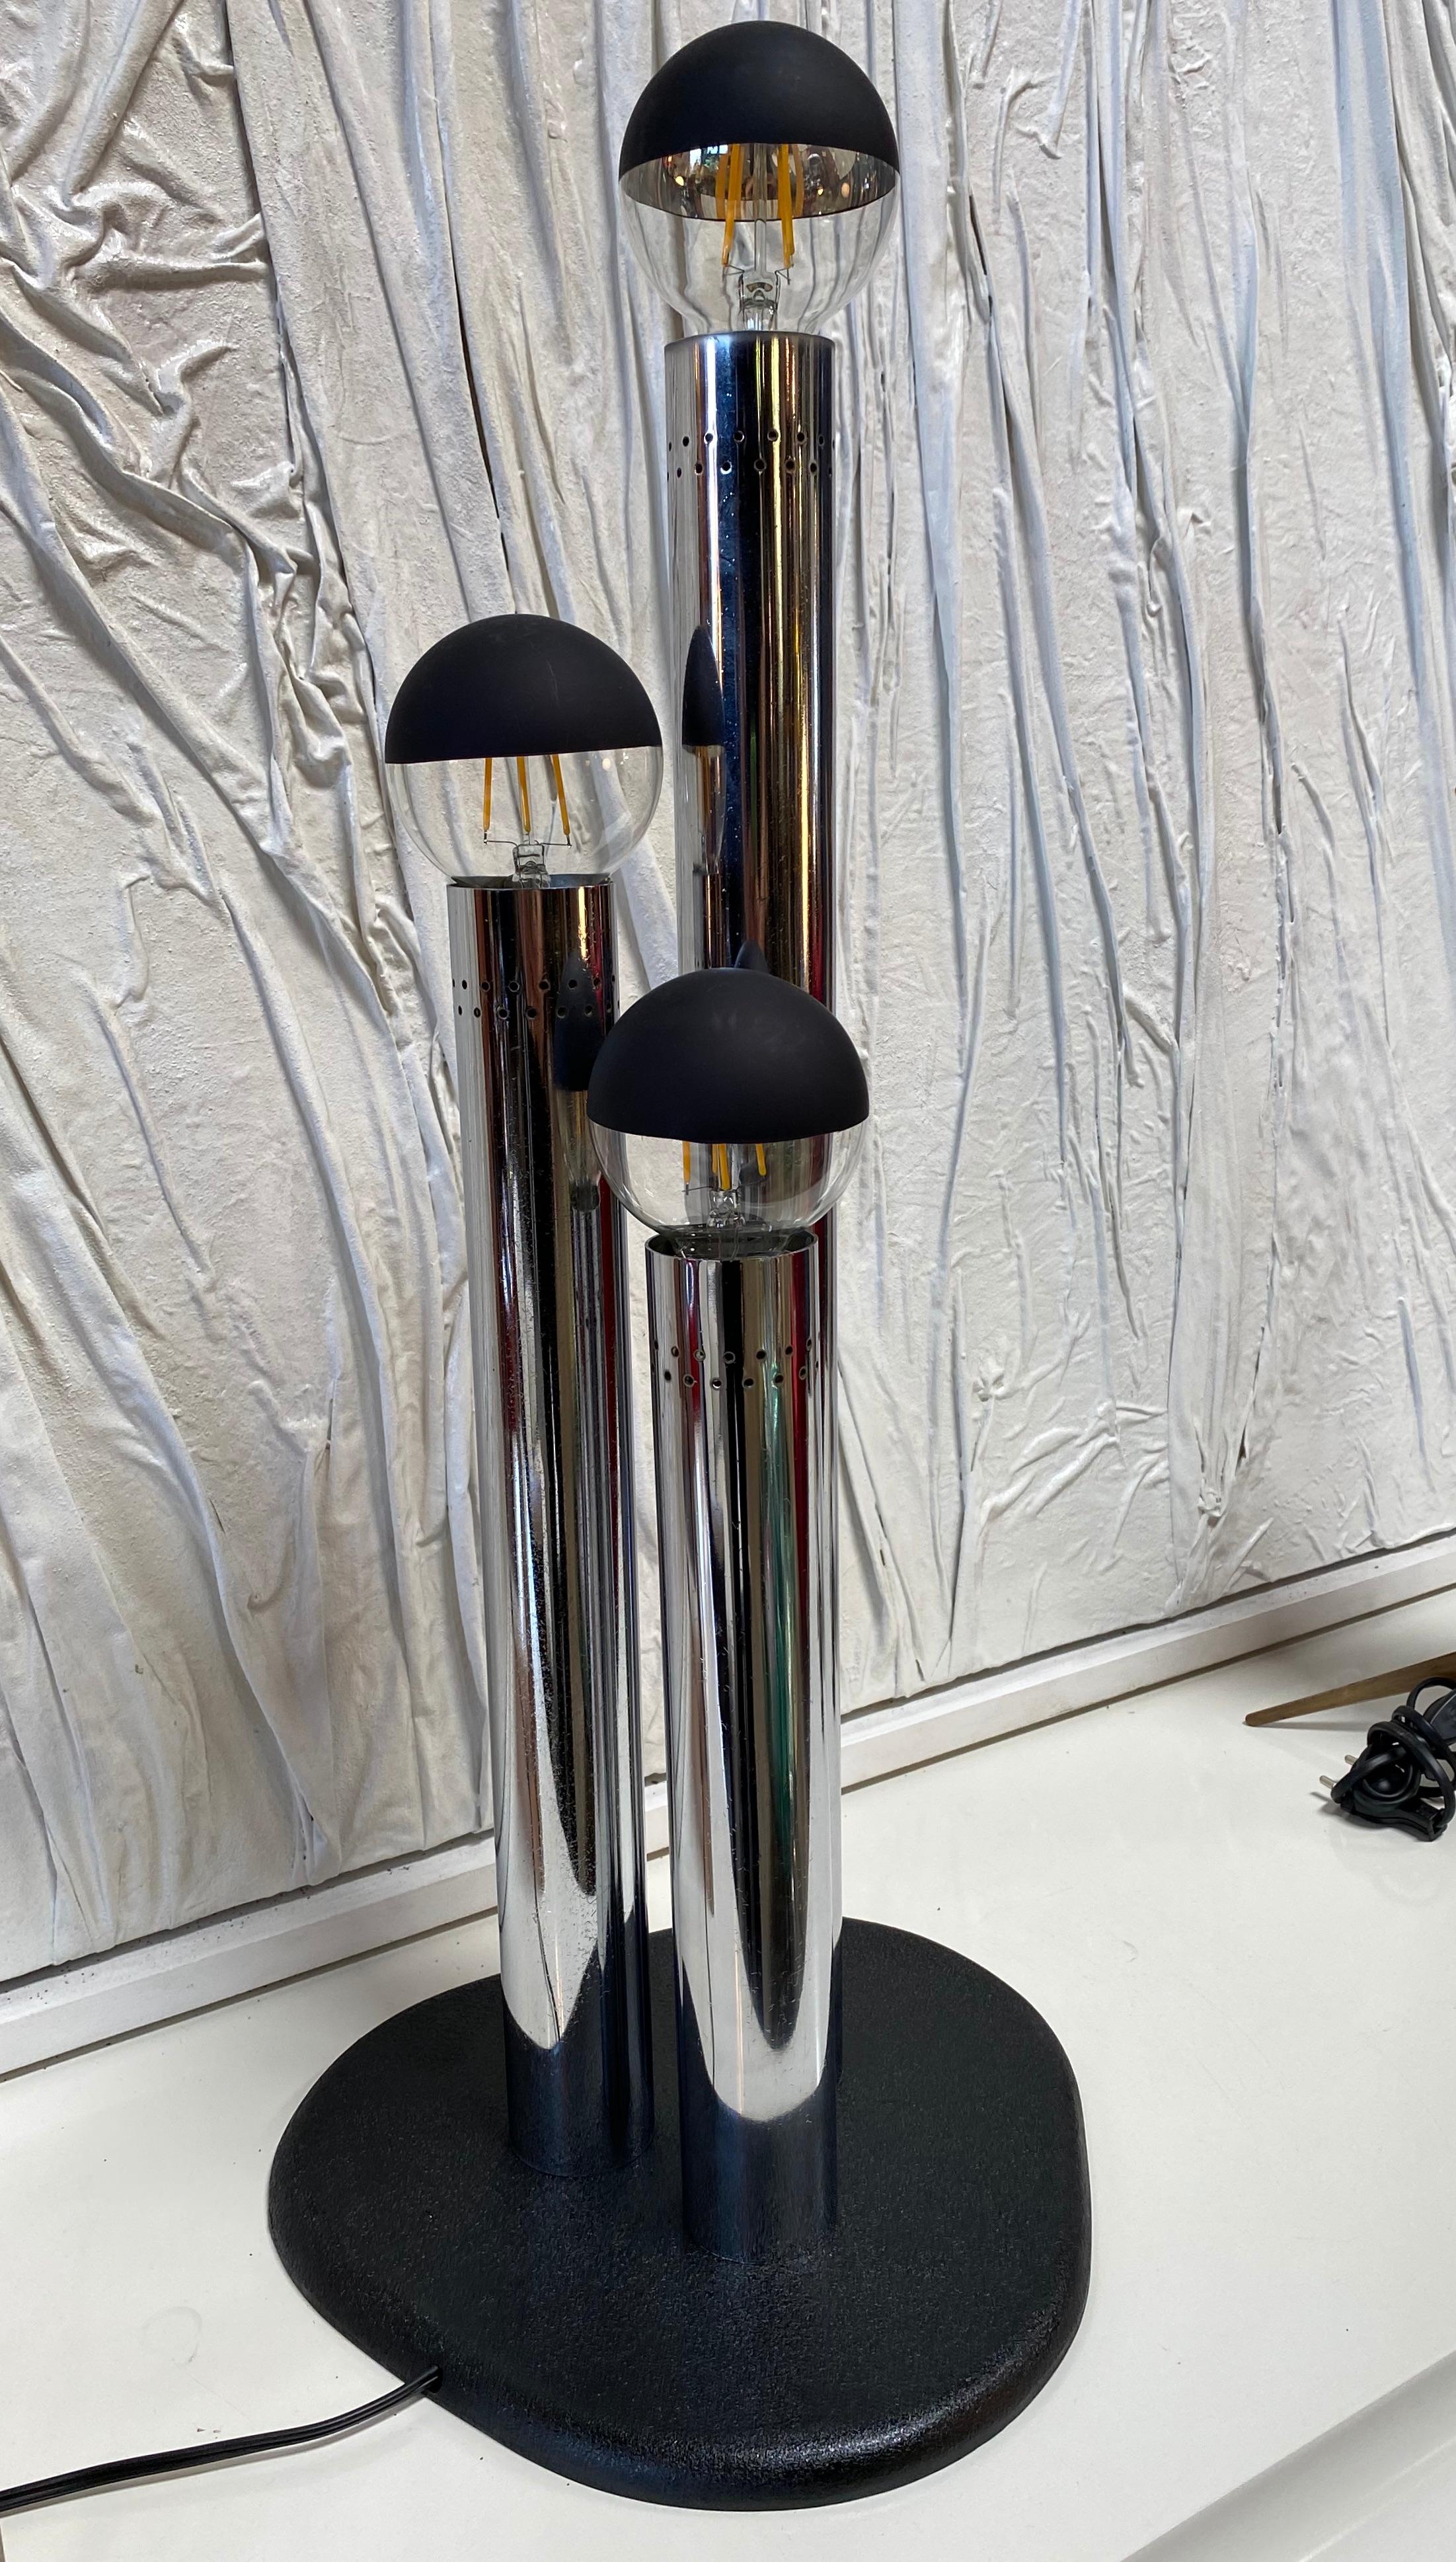 La lampe Space Age est une belle lampe décorative réalisée dans les années 1970 par Goffredo Reggiani pour Reggiani Illuminazione.

Une très belle lampe de table à trois lumières réalisée en acier chromé avec un design élégant et